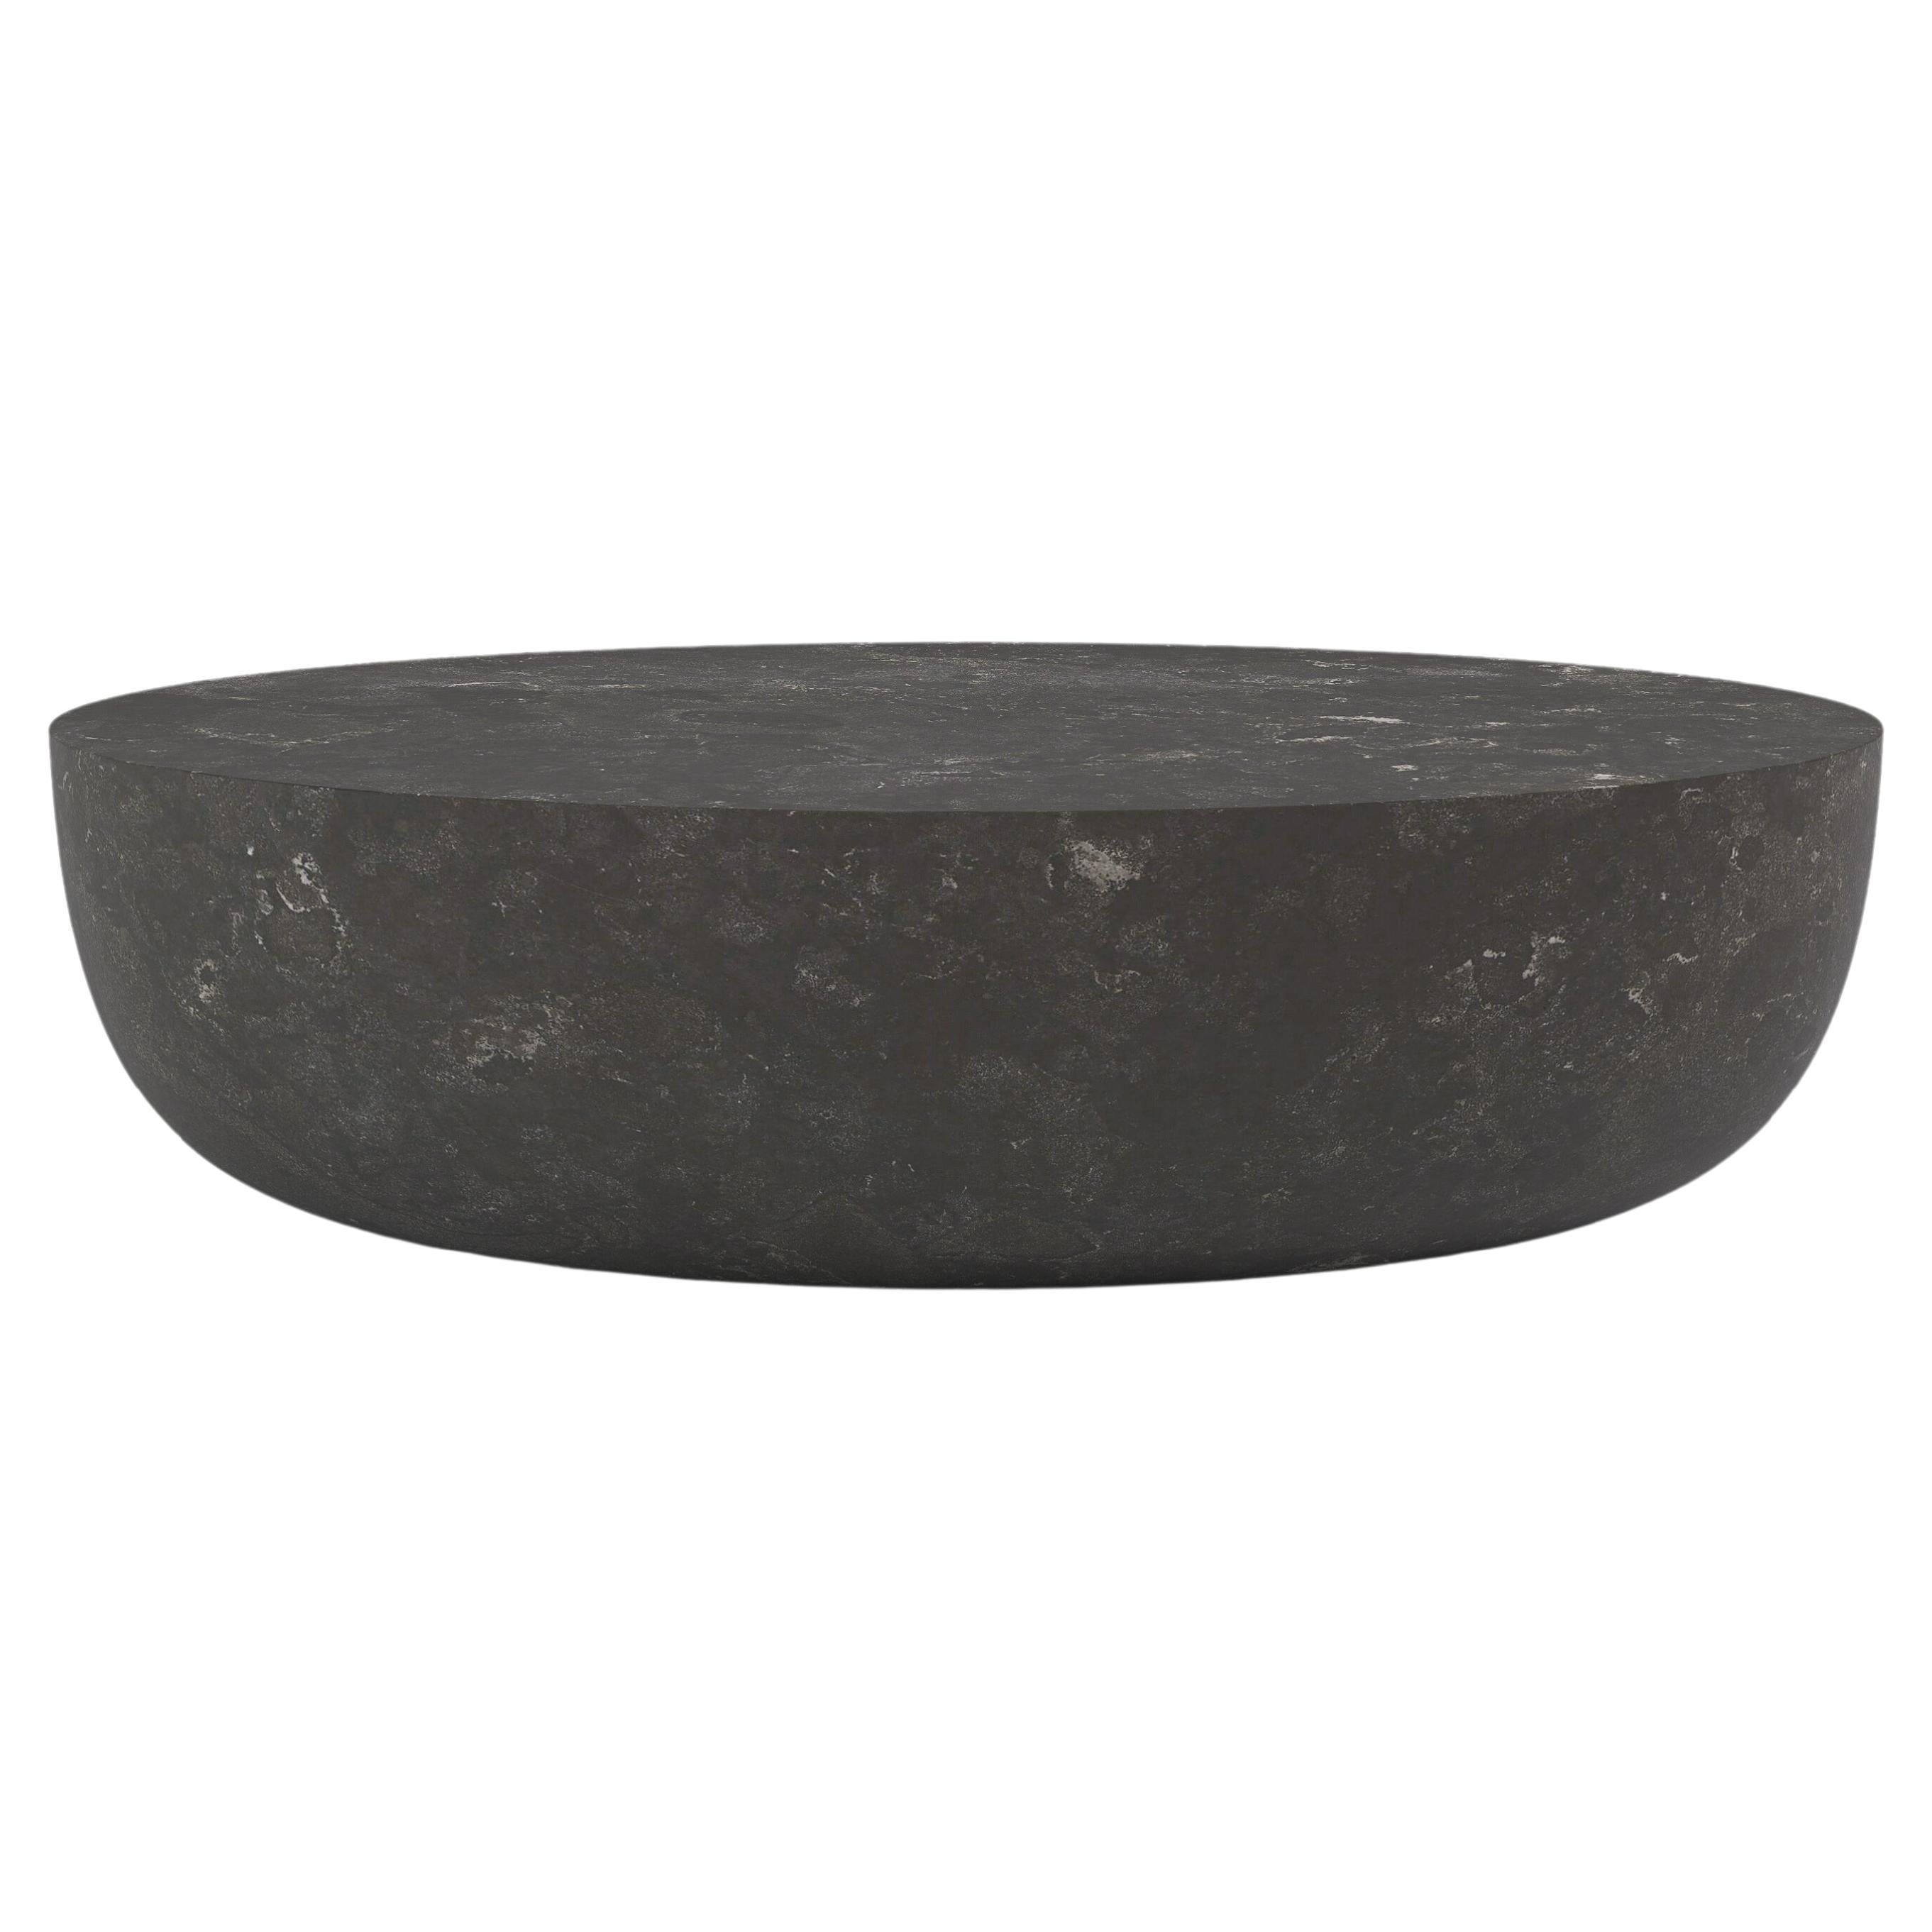 FORM(LA) Sfera Oval Coffee Table 48”L x 36”W x 16”H Nero Petite Granite For Sale